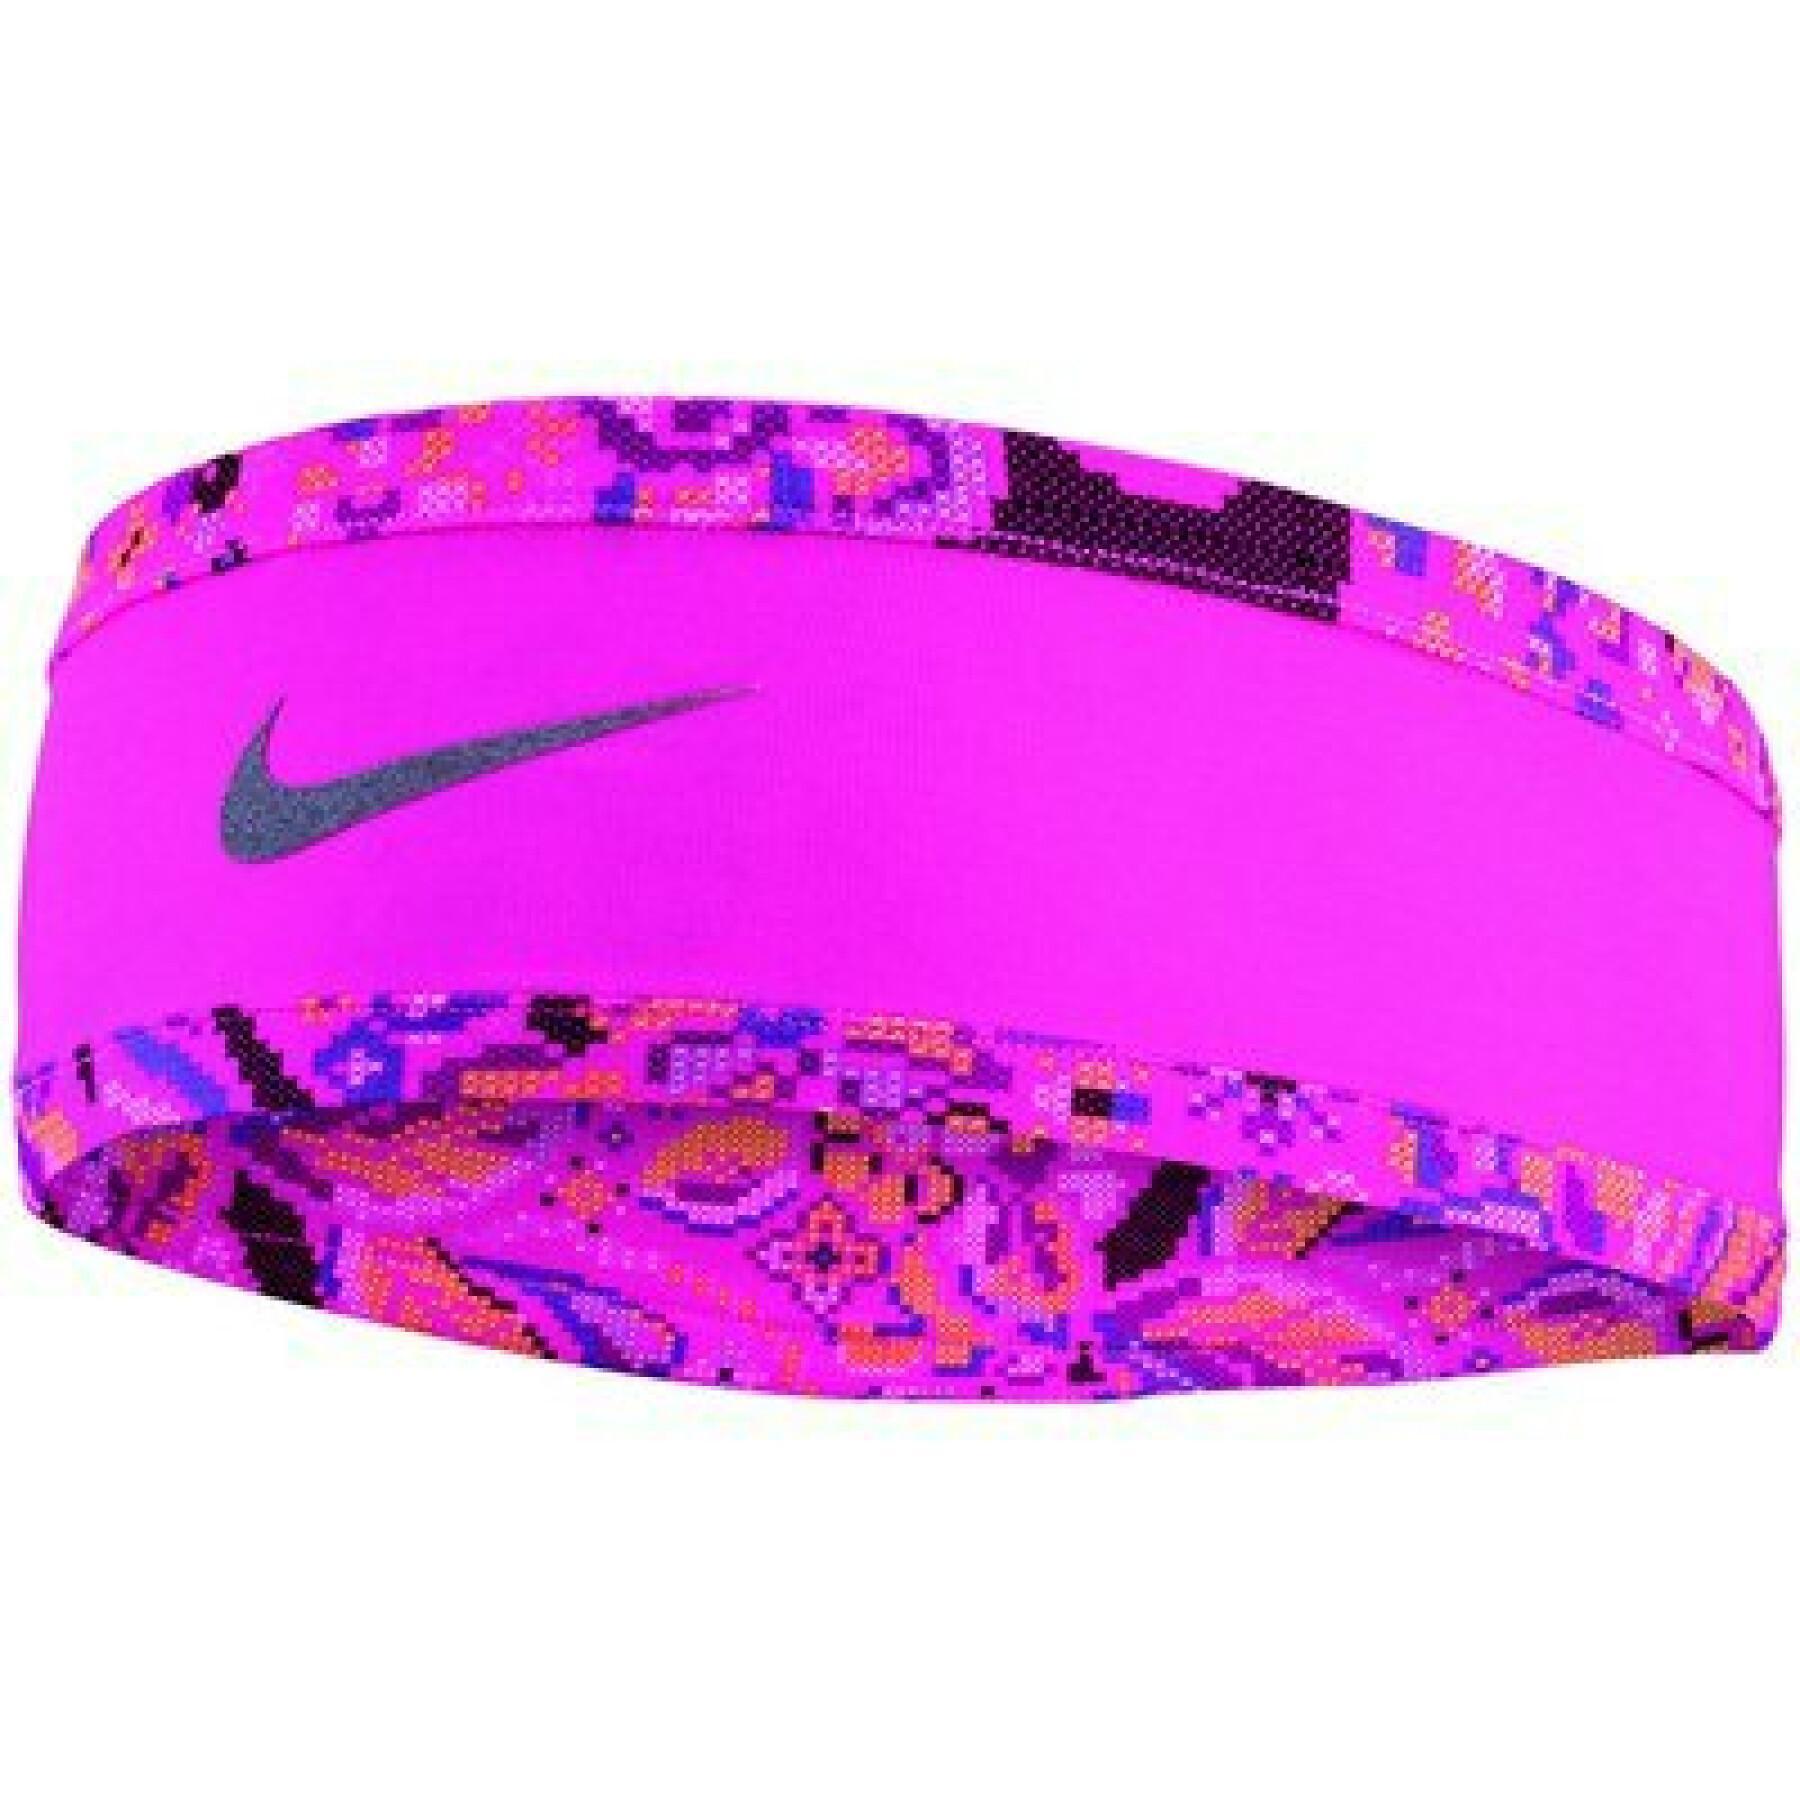 Damenhandschuhe+Stirnband-Set Nike Run